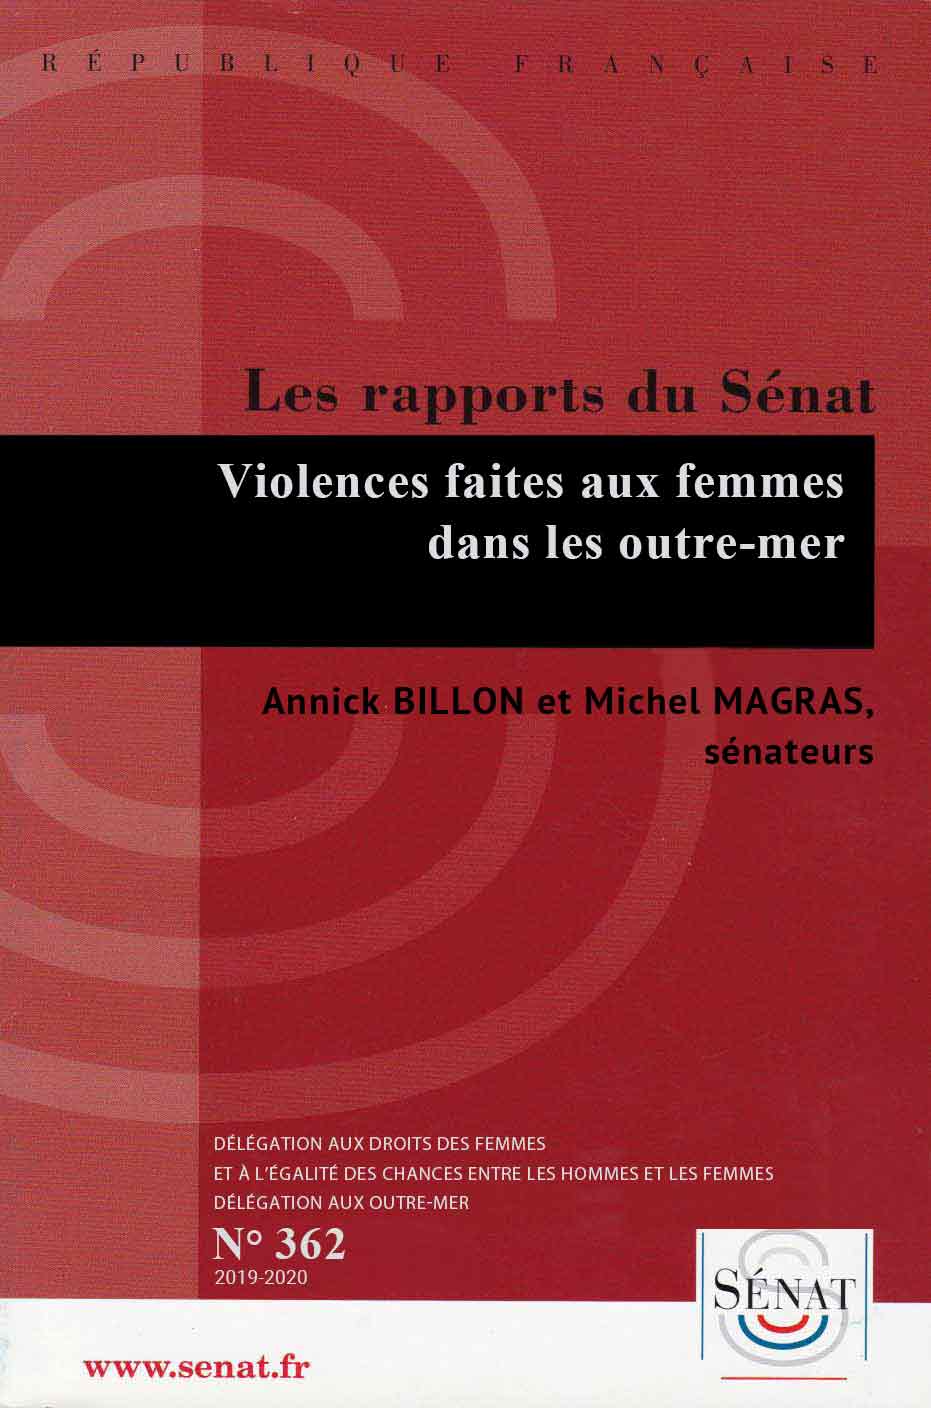 L’ENGAGEMENT DES FEMMES OUTRE-MER : UN LEVIER CLÉ DU DYNAMISME ÉCONOMIQUE
Rapport d’information n°348
21/02/2019, de Annick Billon et Michel Magras 